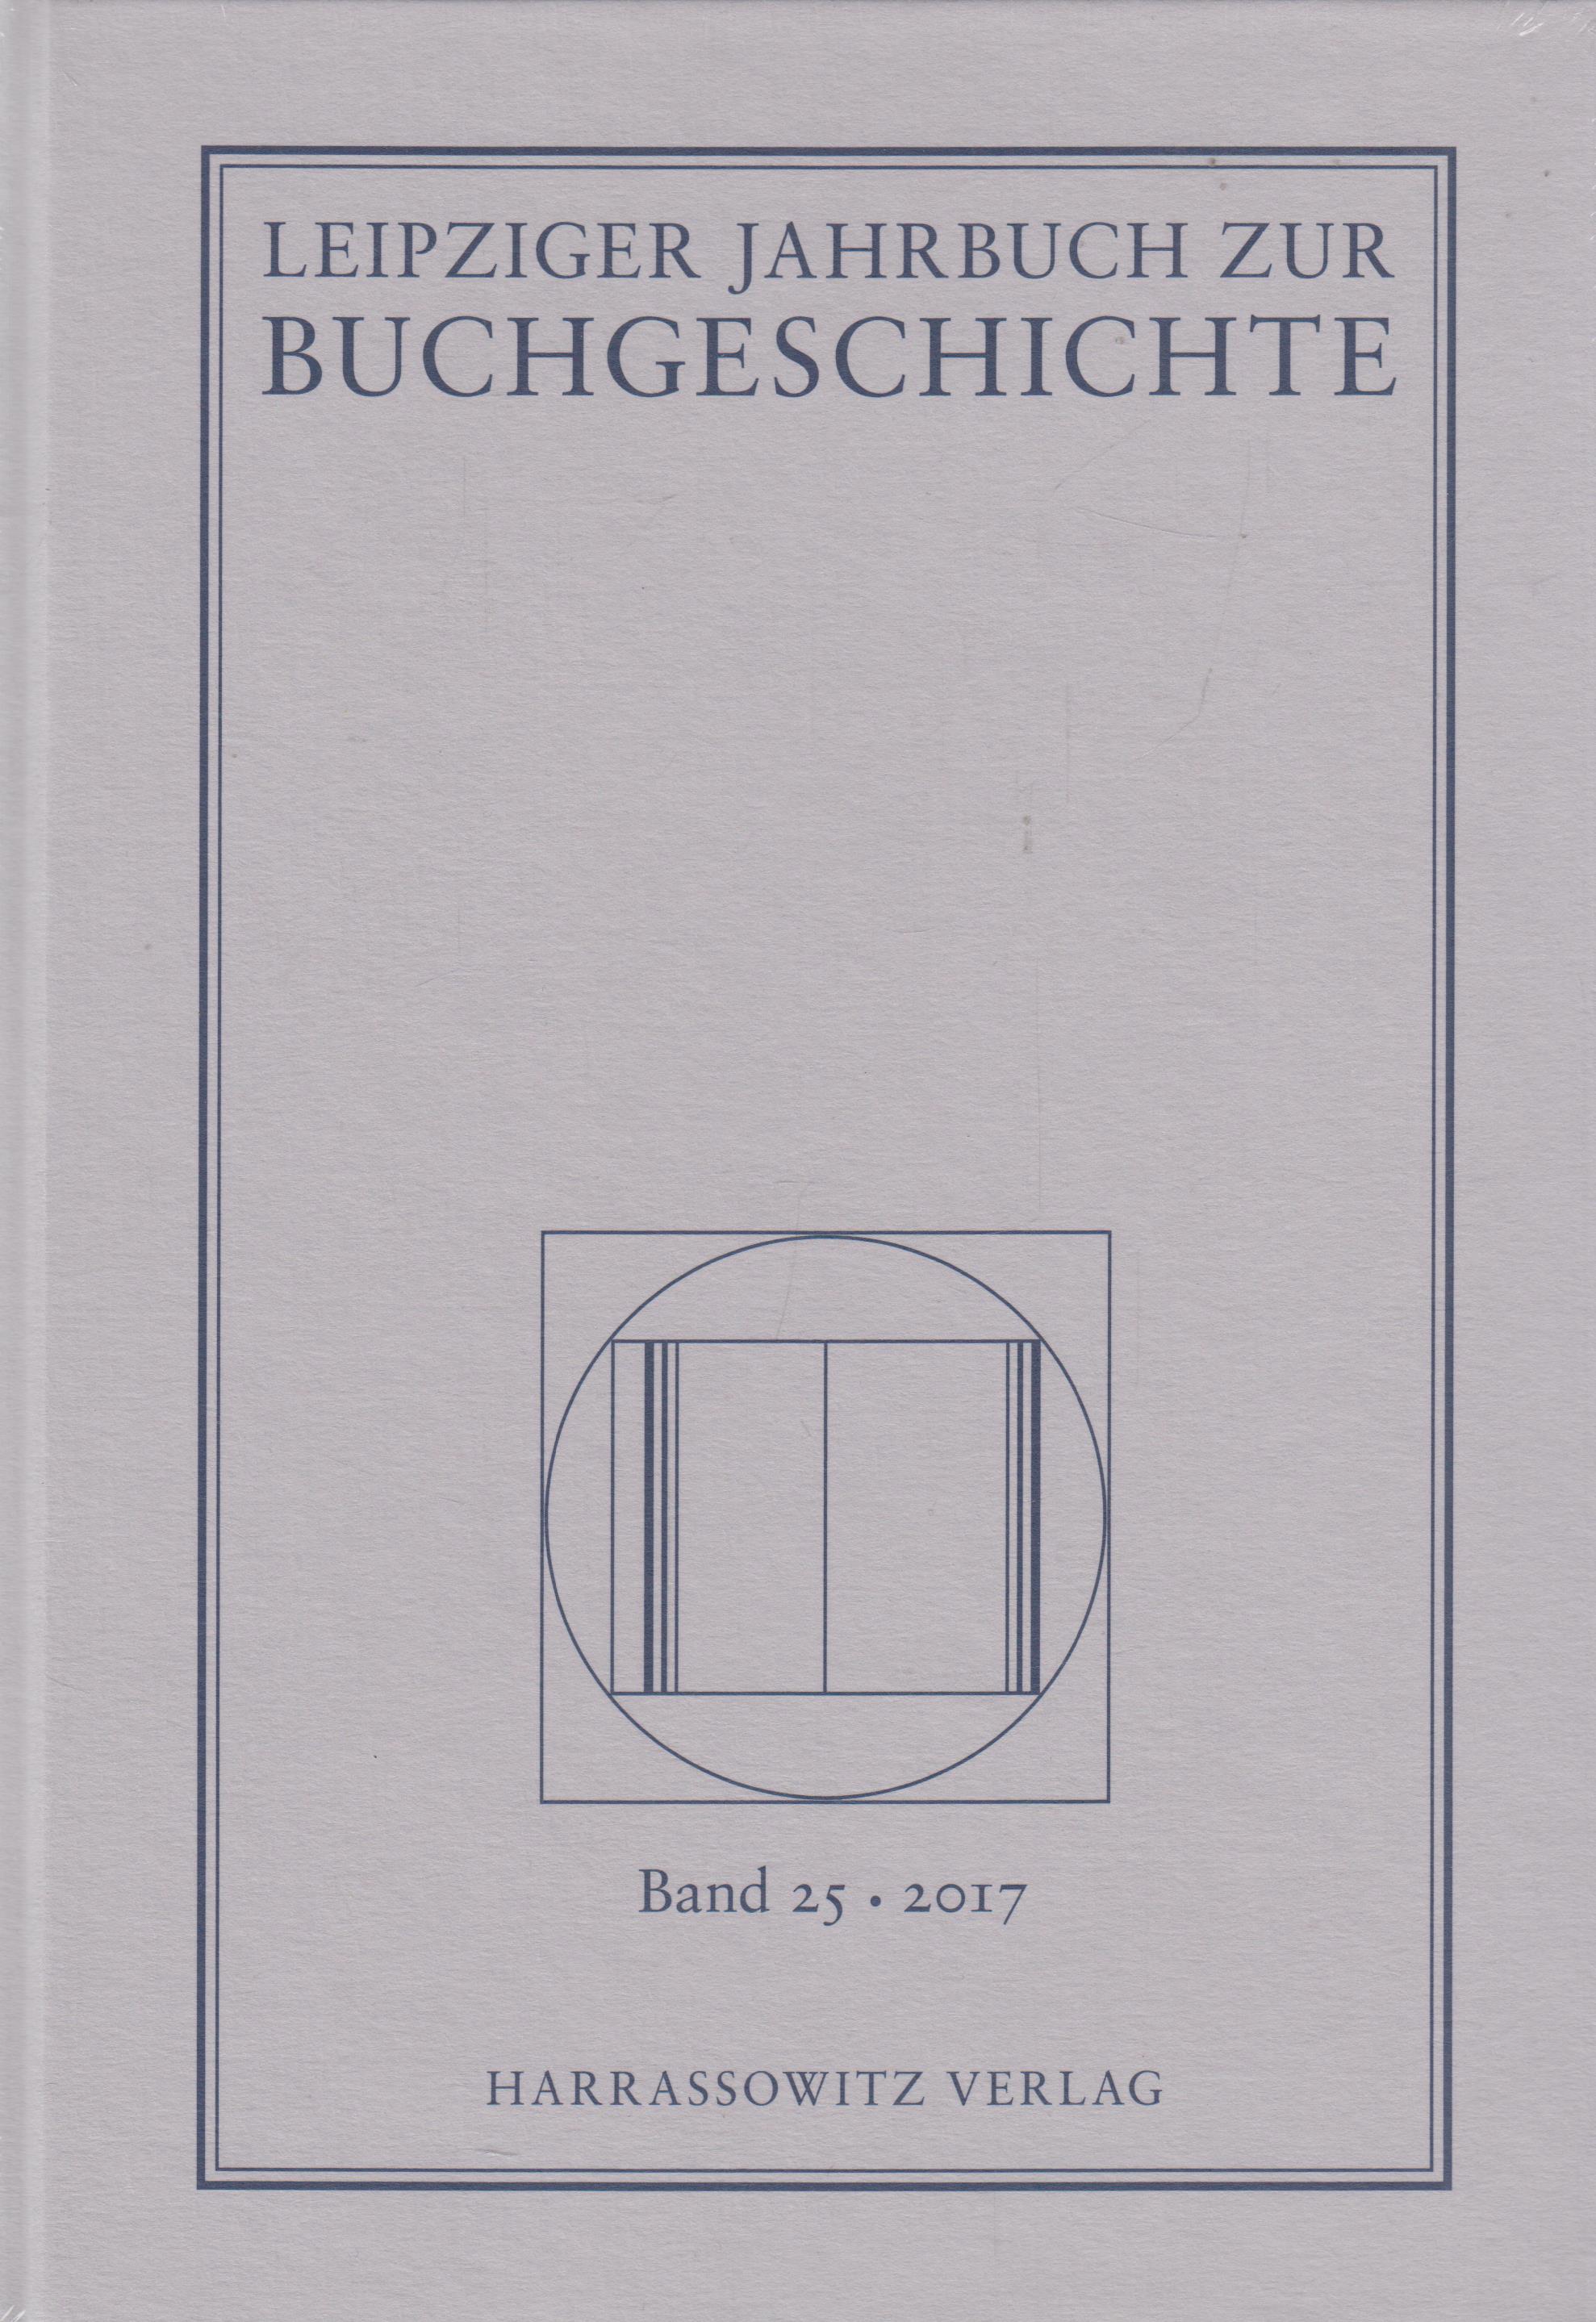 Leipziger Jahrbuch zur Buchgeschichte Band 25 - 2017 - Haug, Christine und Lothar Poethe